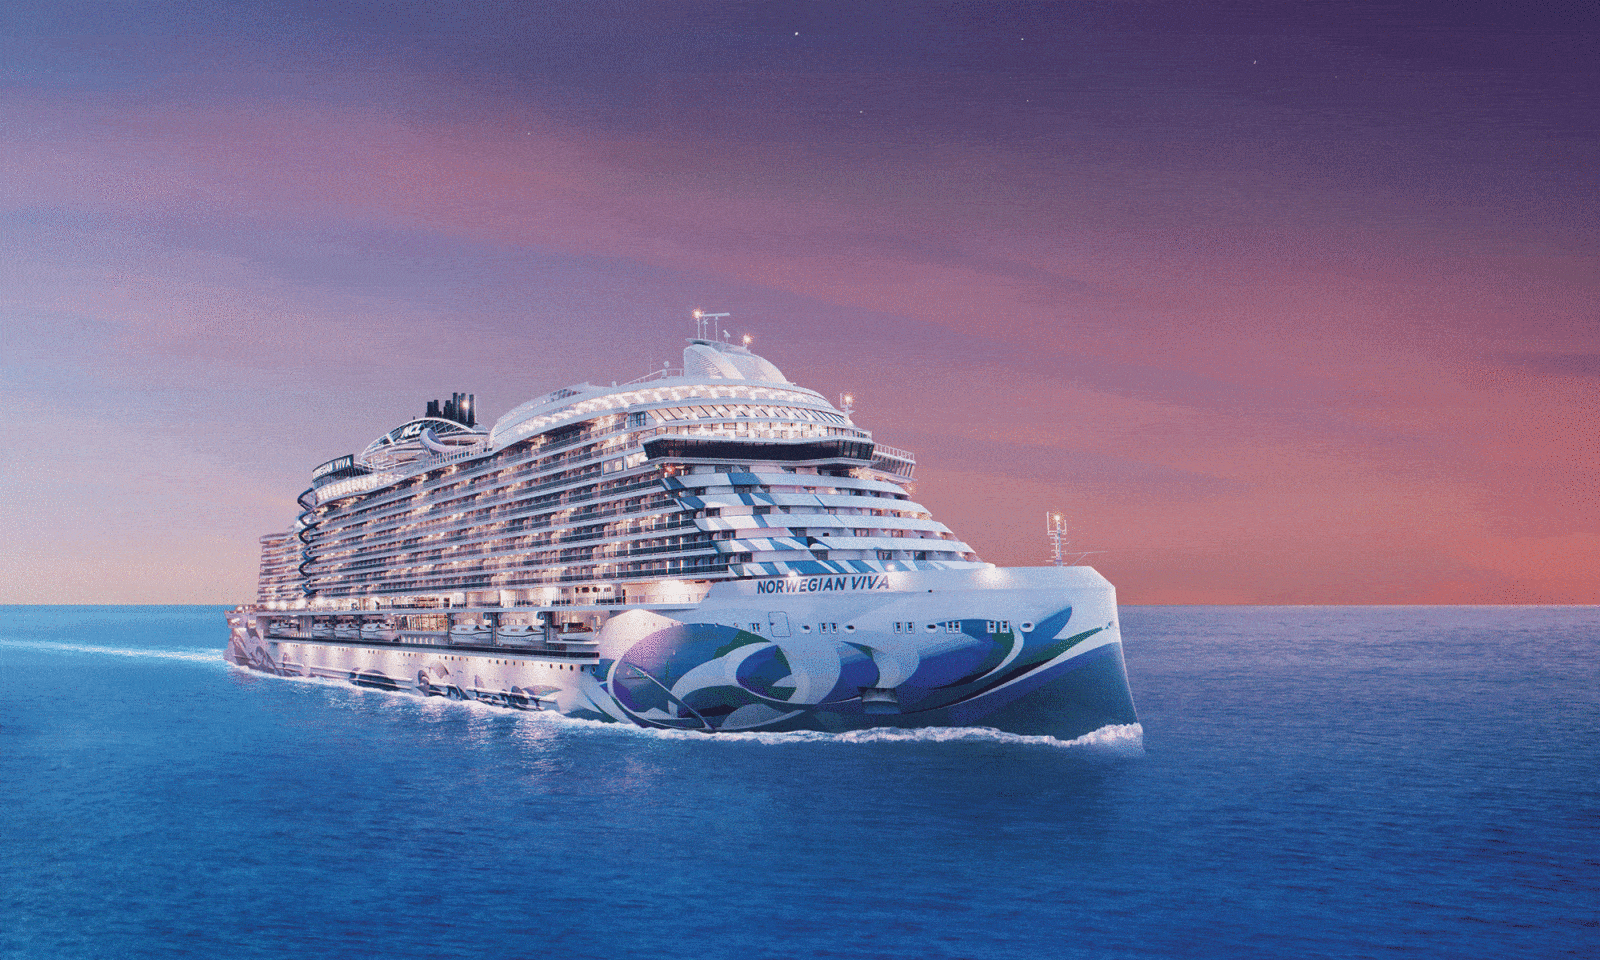 viva cruises reiseunterlagen